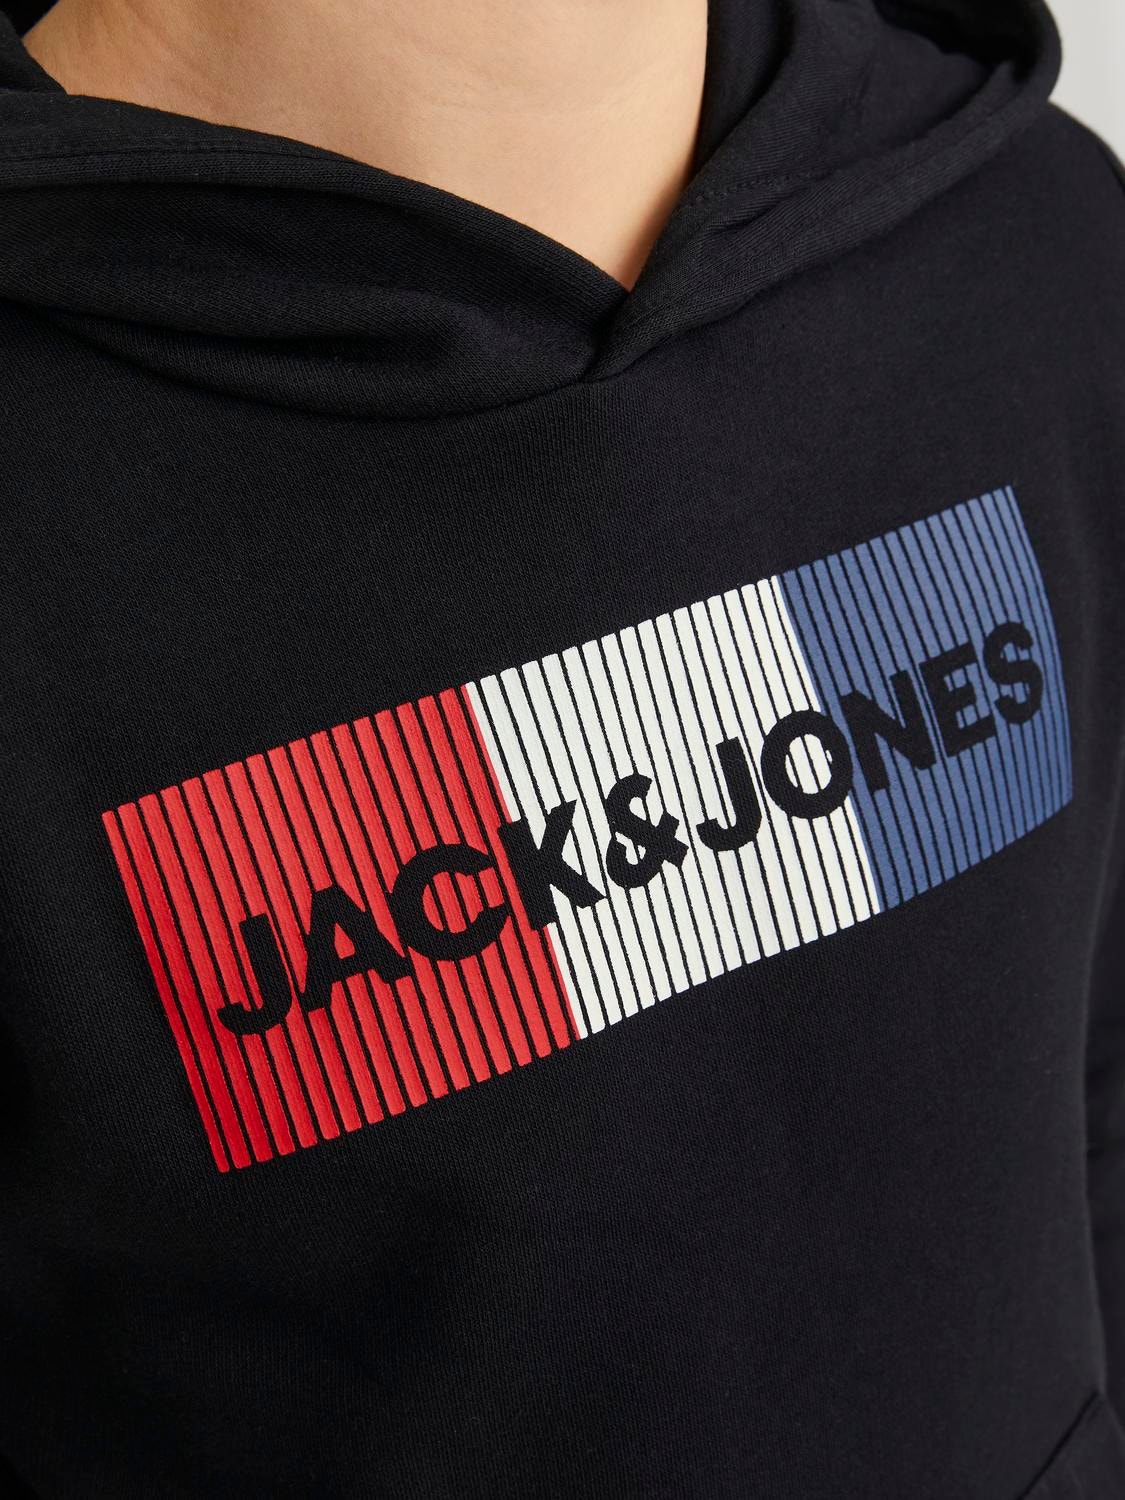 Jack & Jones Logo Hoodie Voor jongens -Black - 12152841